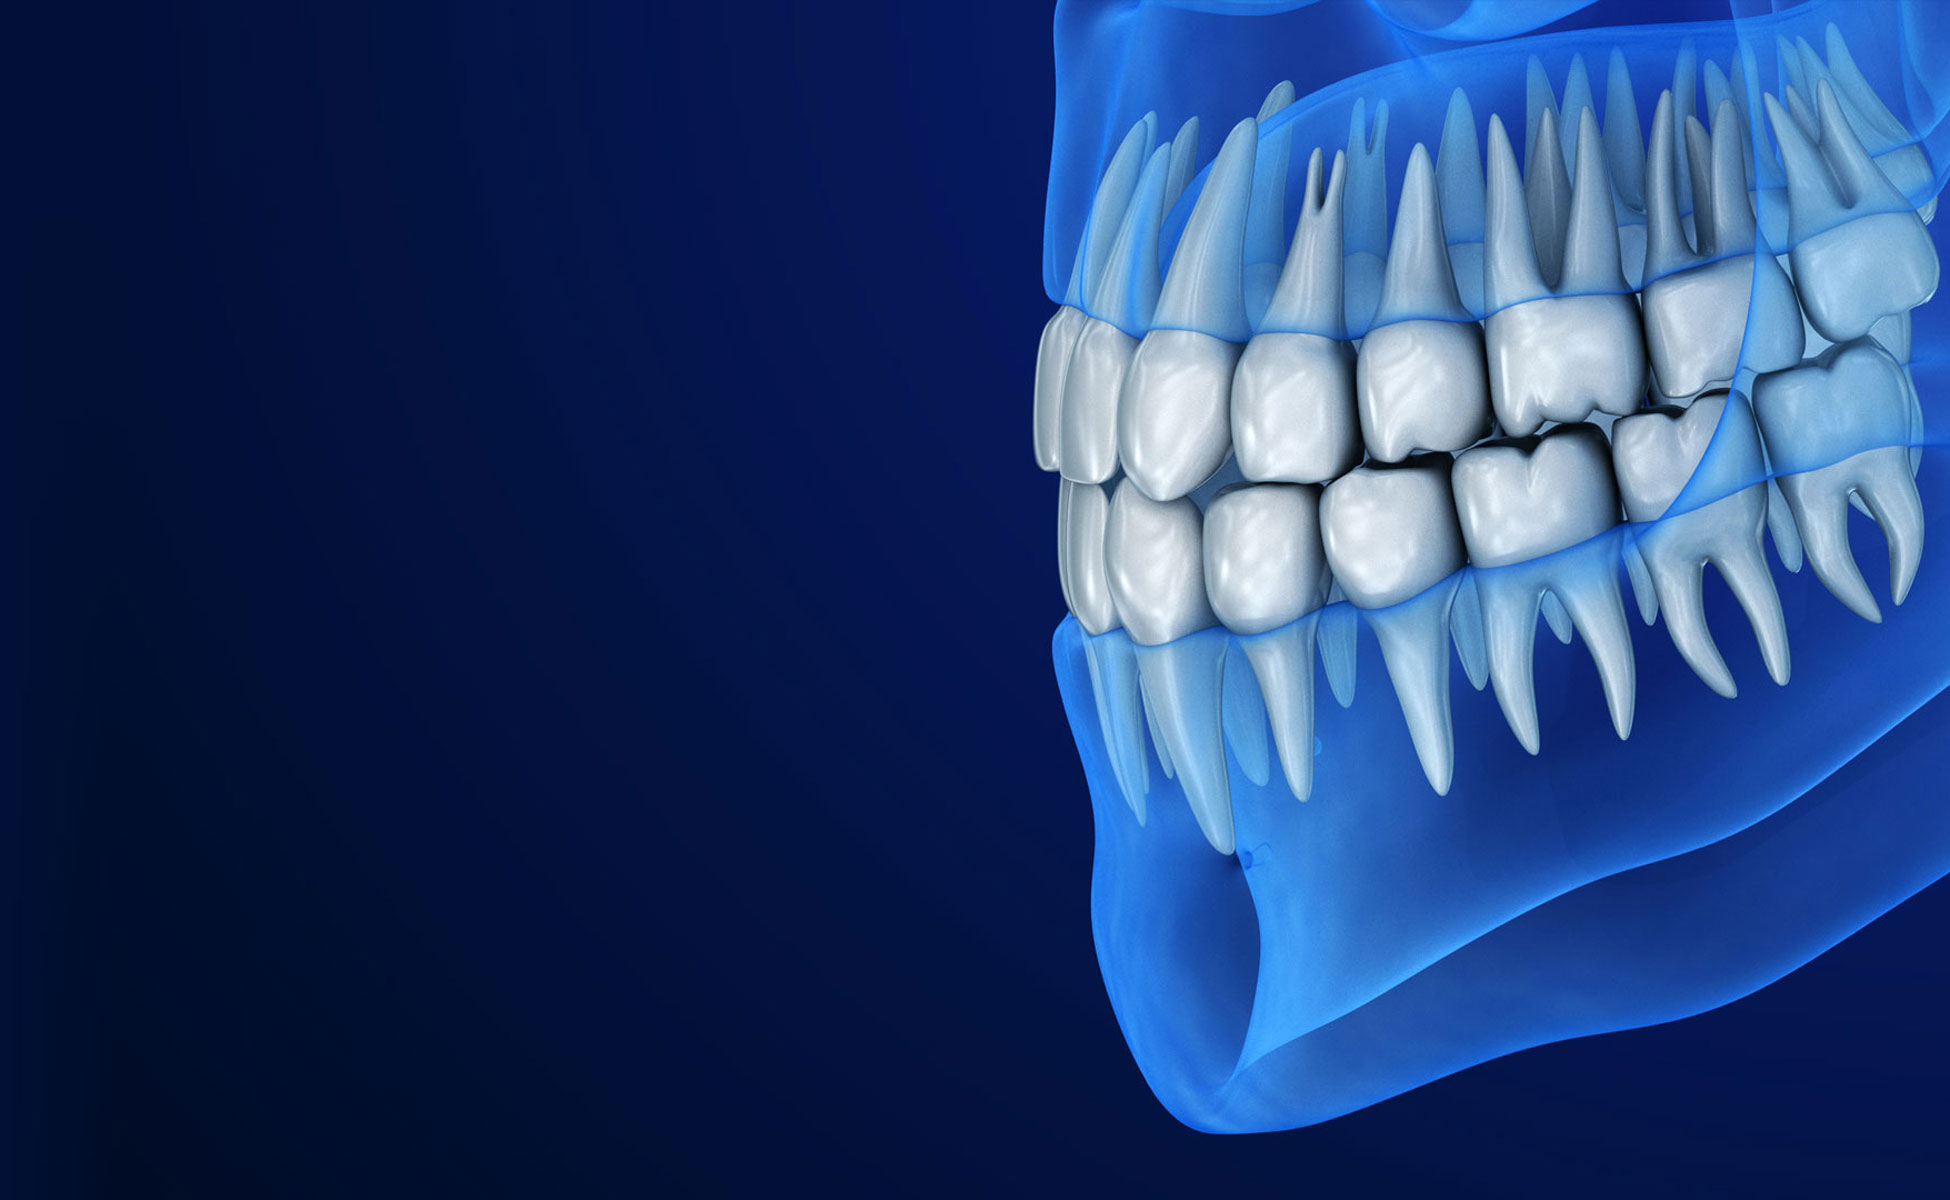 Plava pozadina 3D shematski prikaz zuba gornje i donje vilice